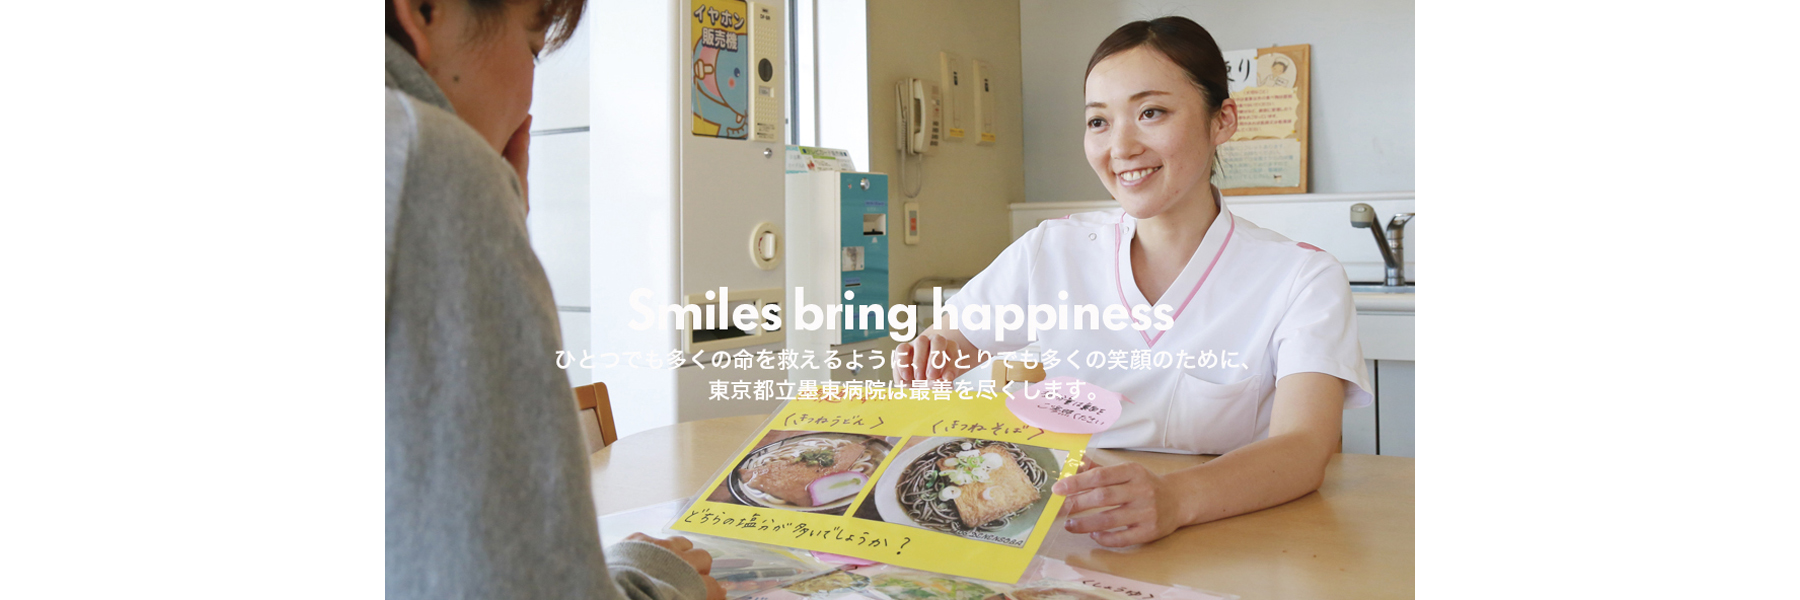 Smiles bring happiness　ひとつでも多くの命を救えるように、ひとりでも多くの笑顔のために、東京都立墨東病院は最善を尽くします。